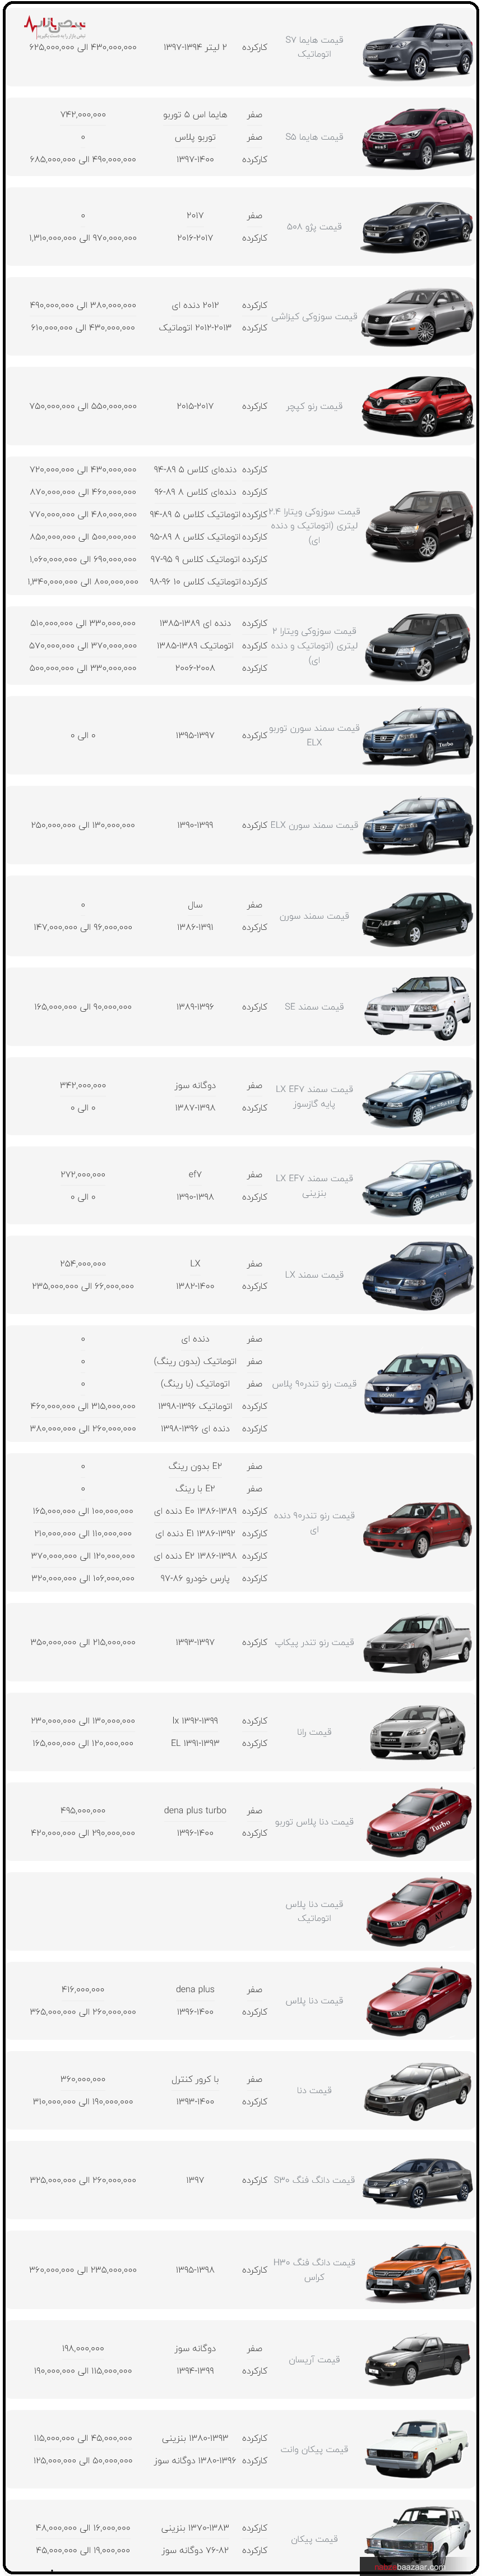 قیمت محصولات ایران خودرو در بازار امروز تهران ۱۵ دی ۱۴۰۰